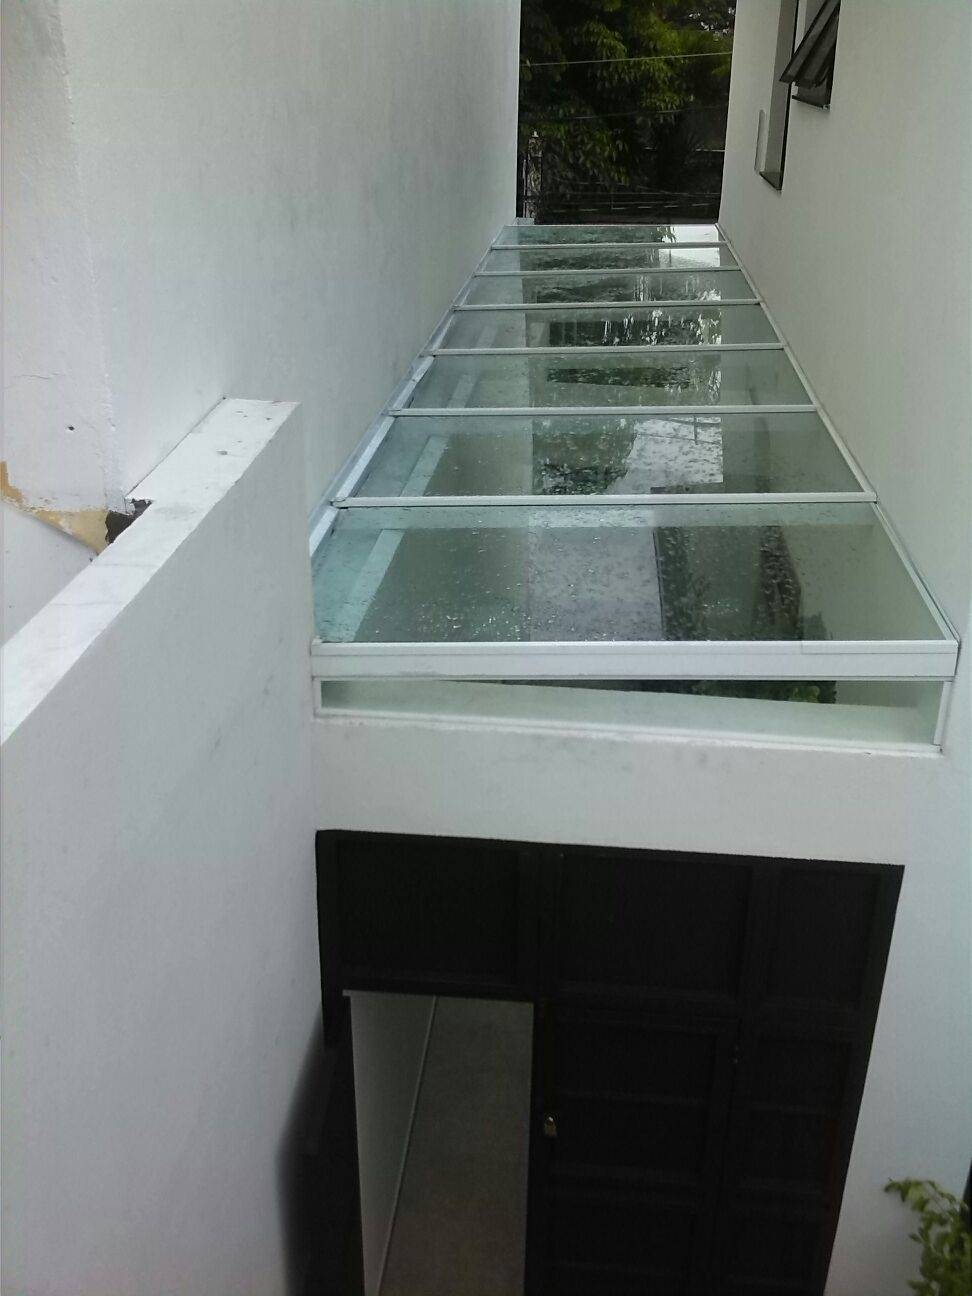 Cobertura de Vidro Temperado Preço no Jardim Paulistano - Cobertura de Vidro para Quintal